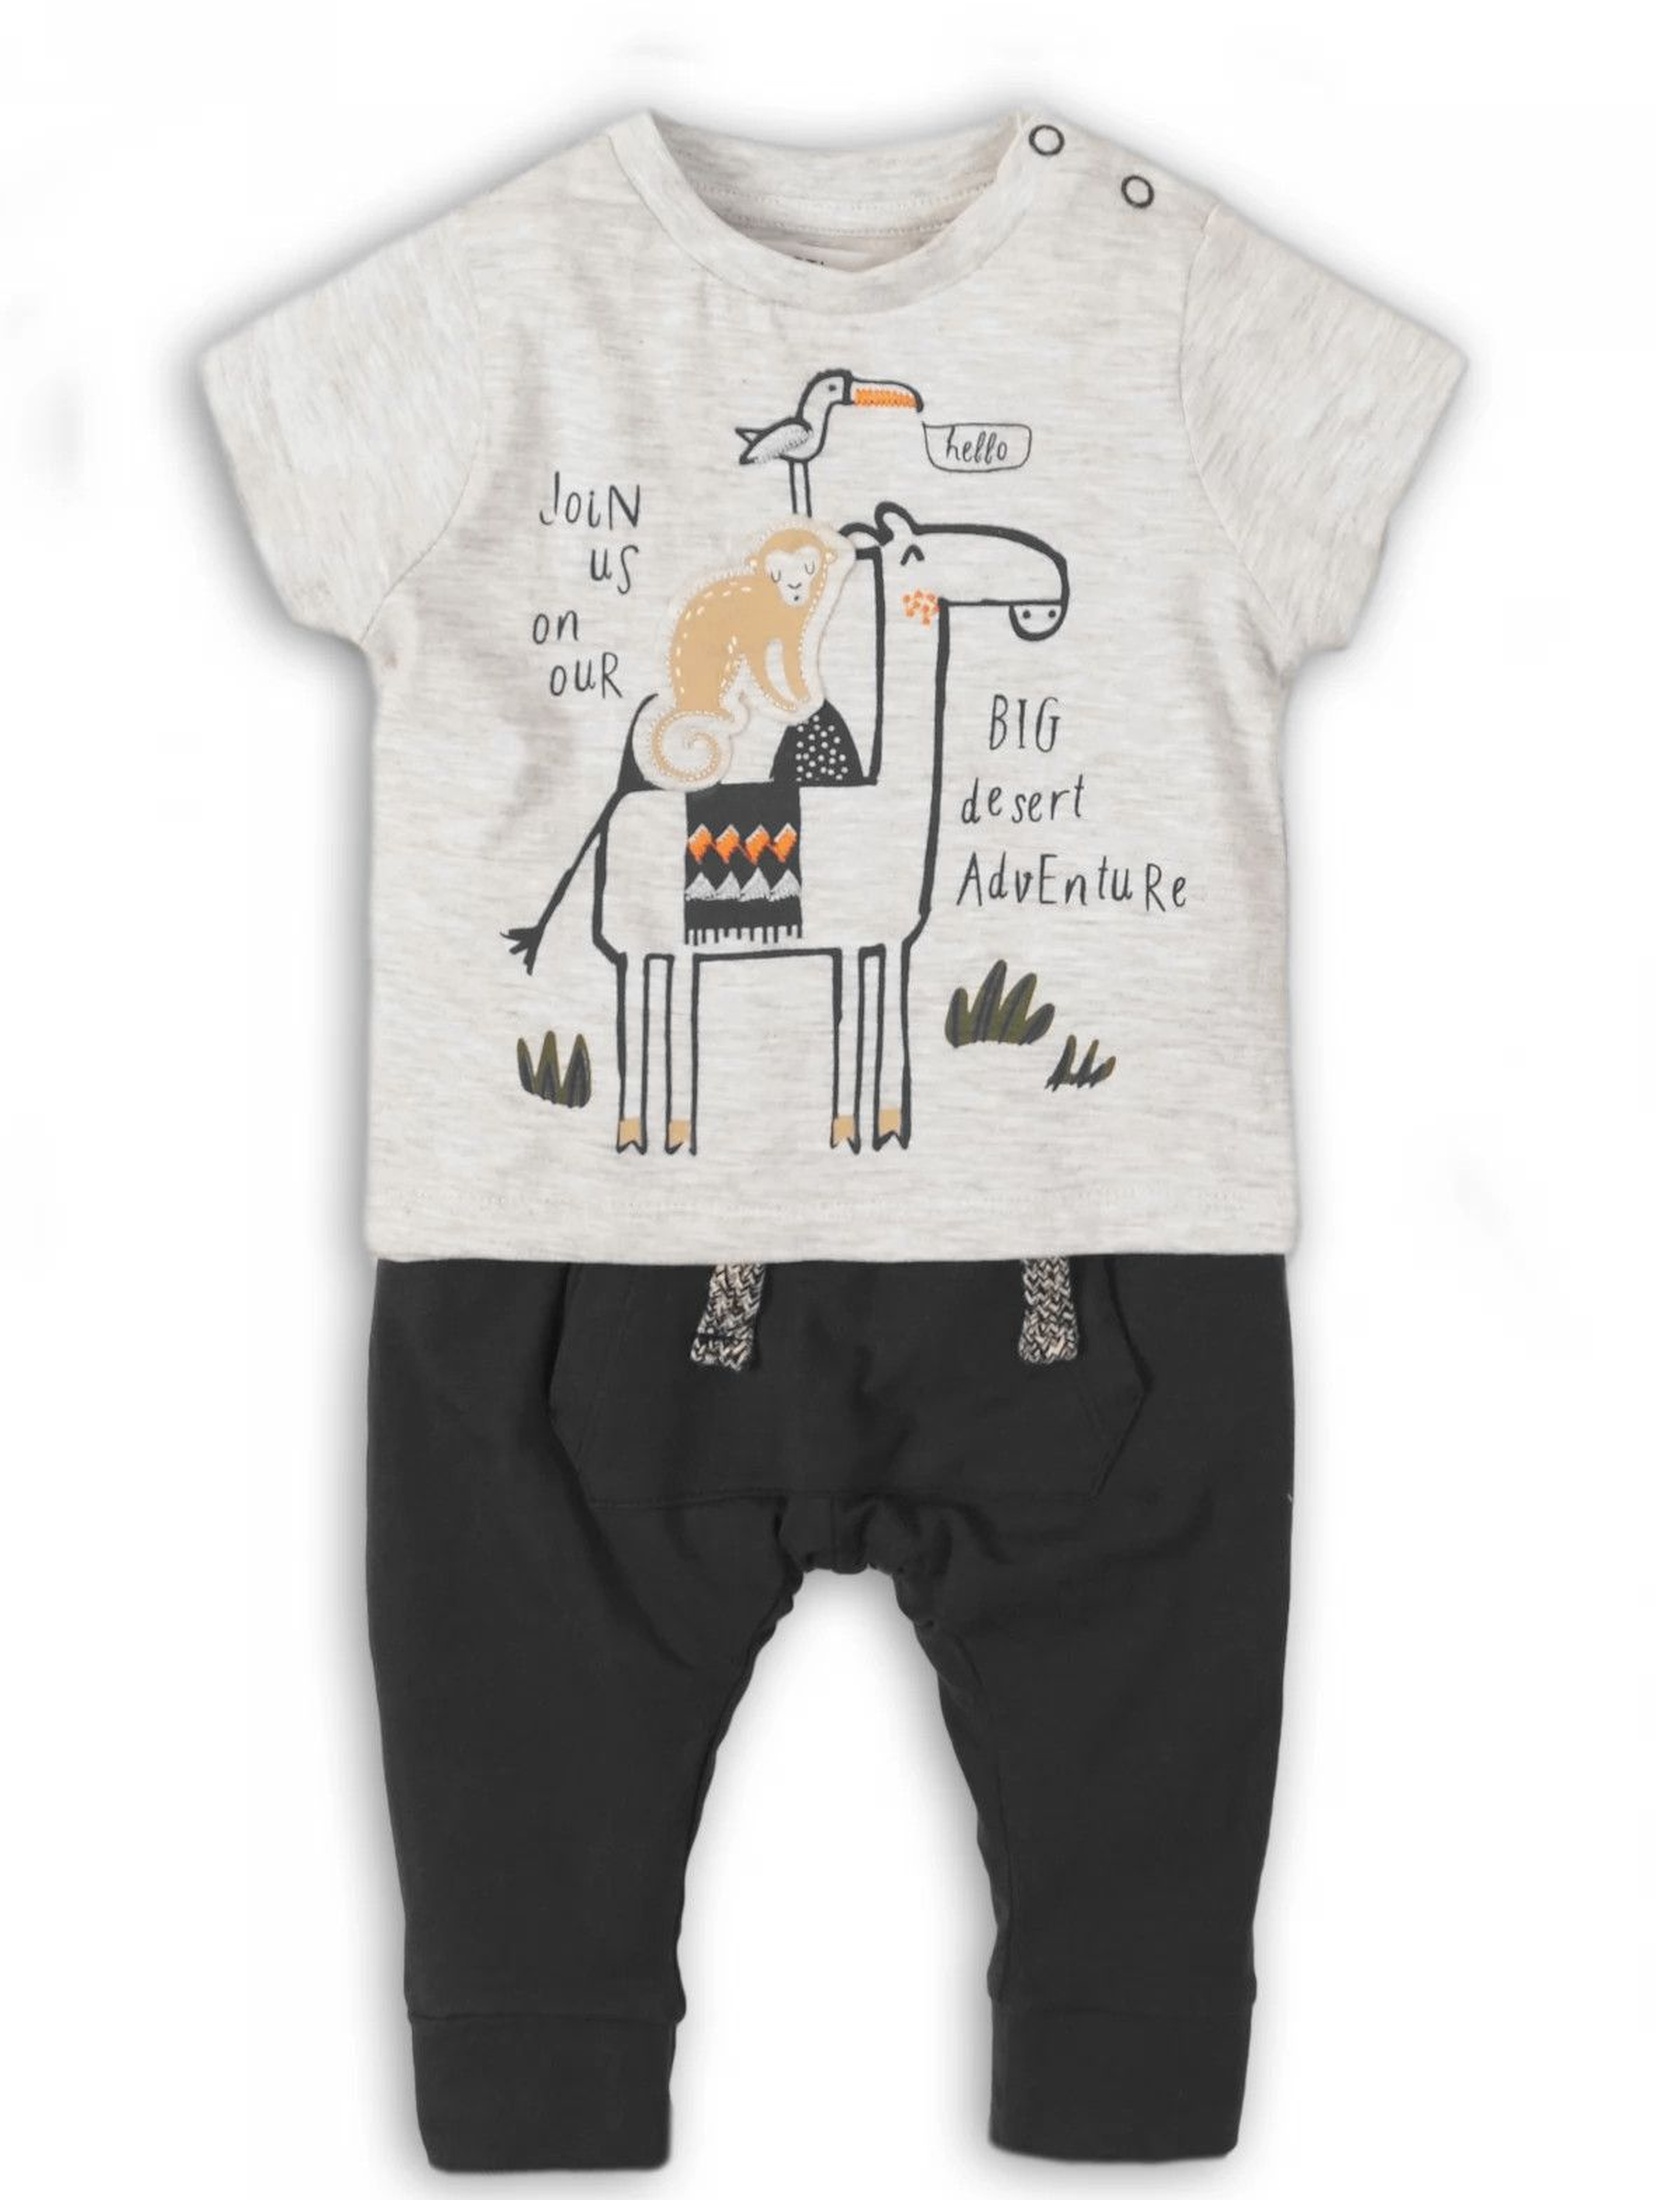 Komplet ubrań dla niemowlaka - t-shirt i spodnie dresowe